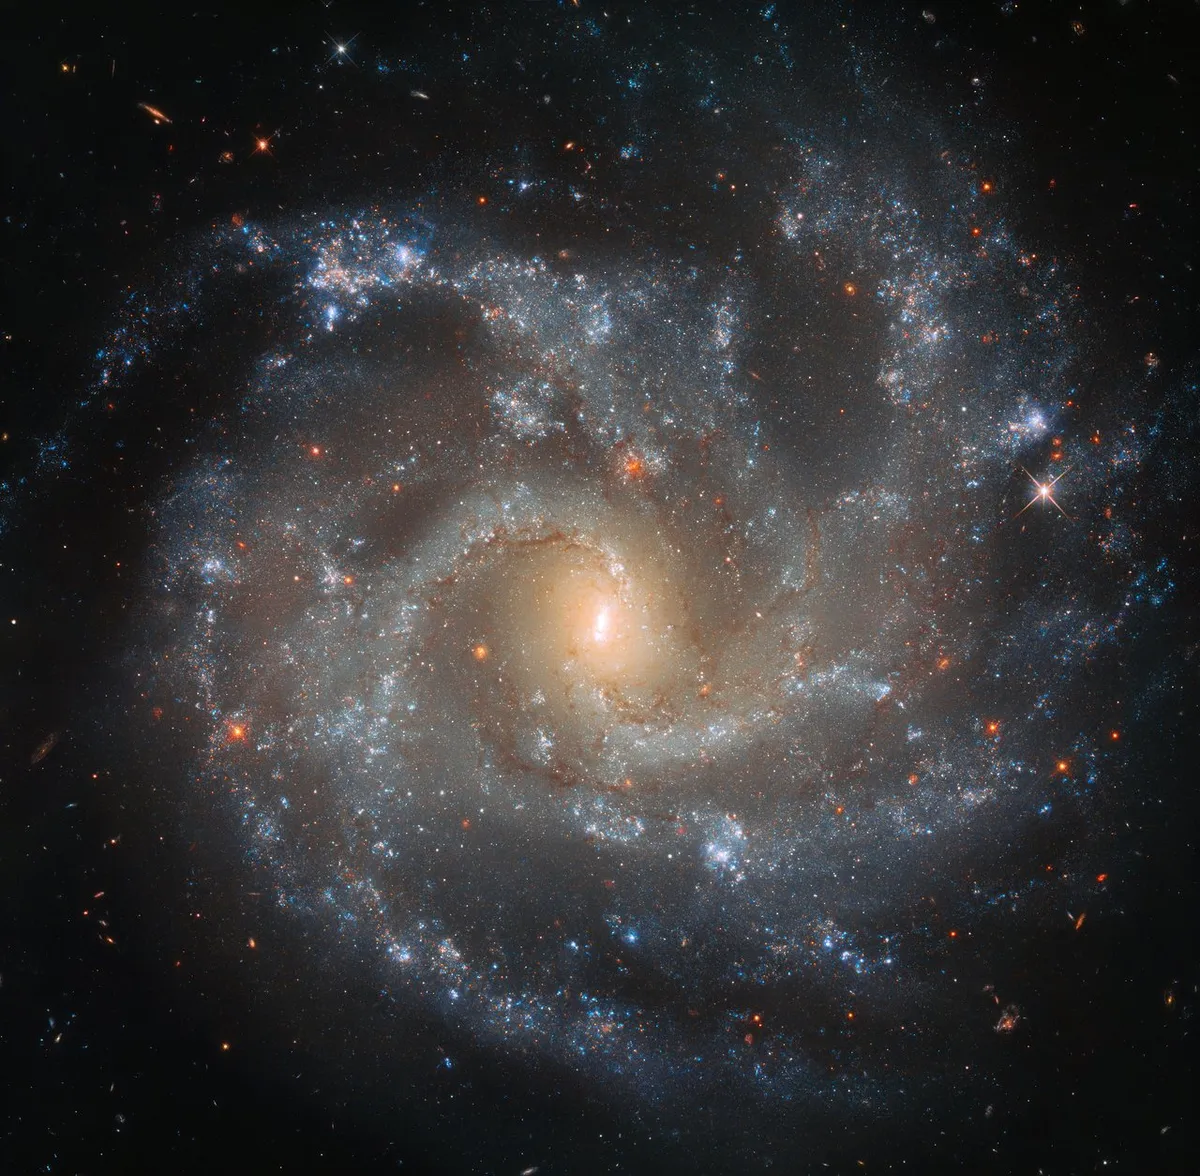 Spiral galaxy NGC 5468. Credit ESA/Hubble & NASA, A. Riess et al. / Acknowledgements: Judy Schmidt (Geckzilla)